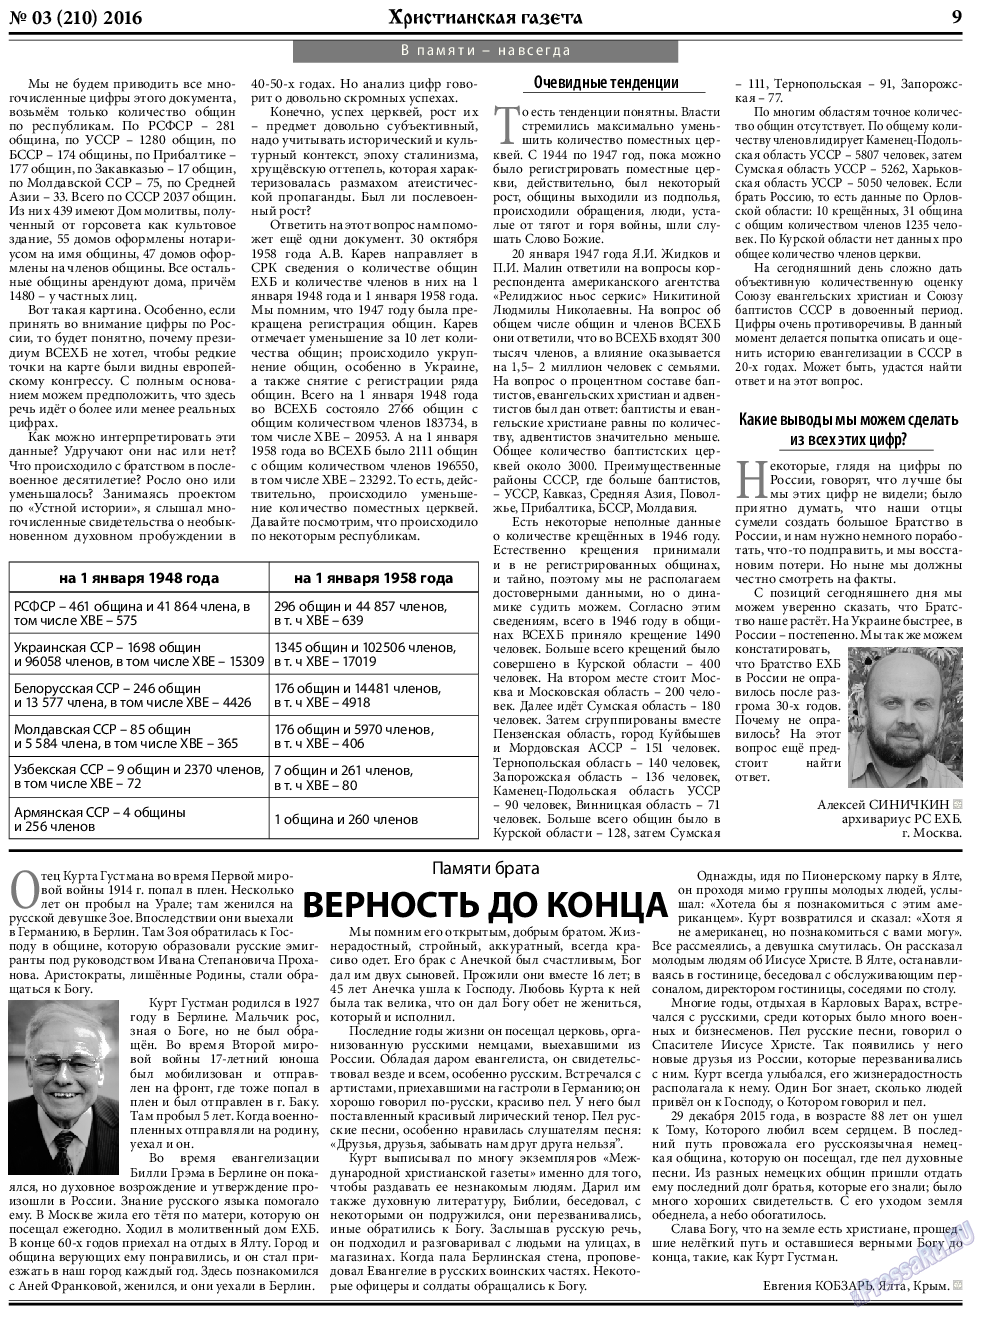 Христианская газета, газета. 2016 №3 стр.9